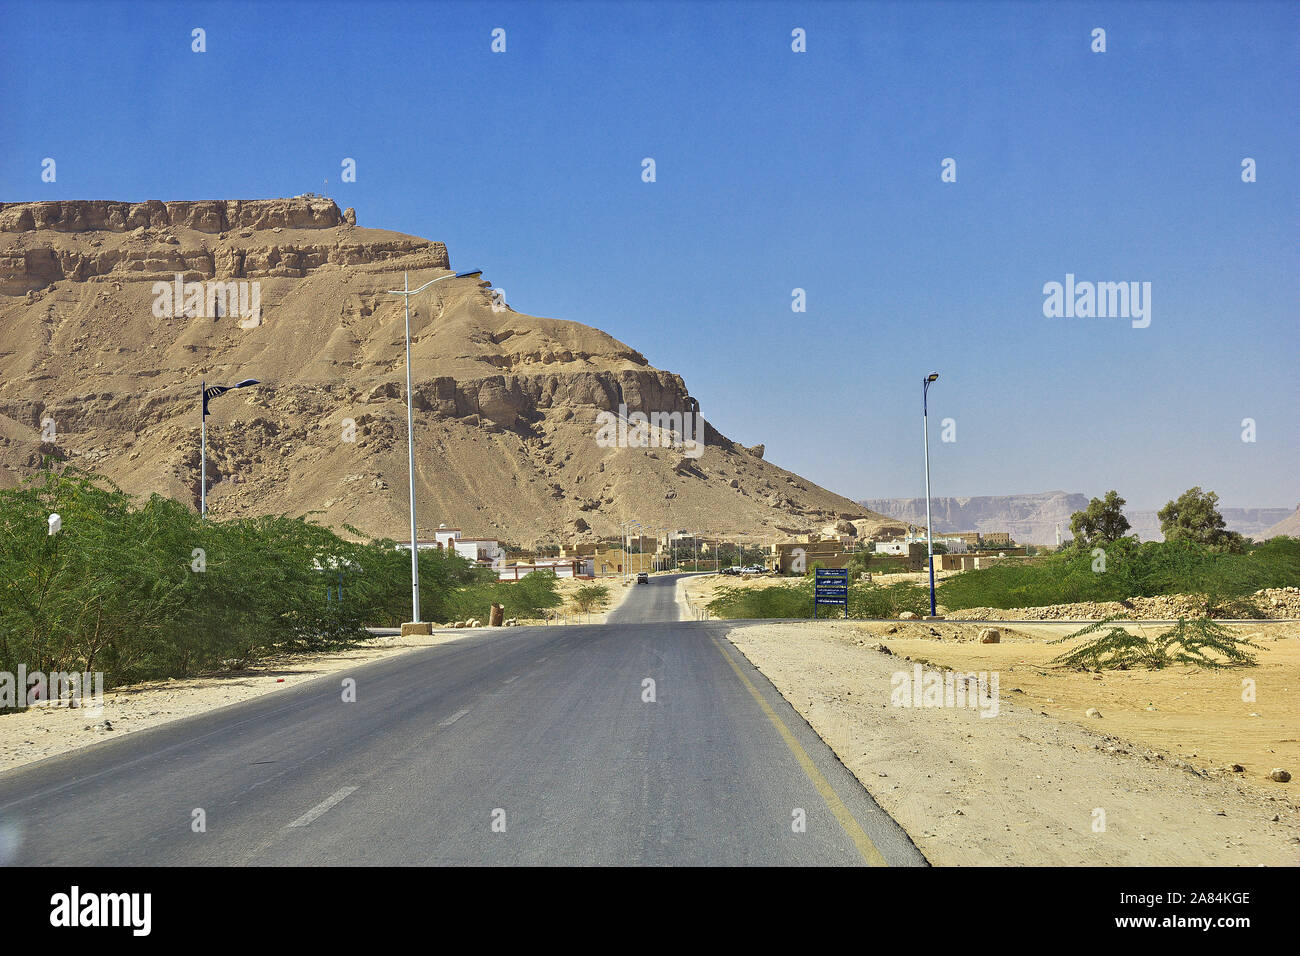 The road in mountains in Wadi Hadhramaut, Yemen Stock Photo